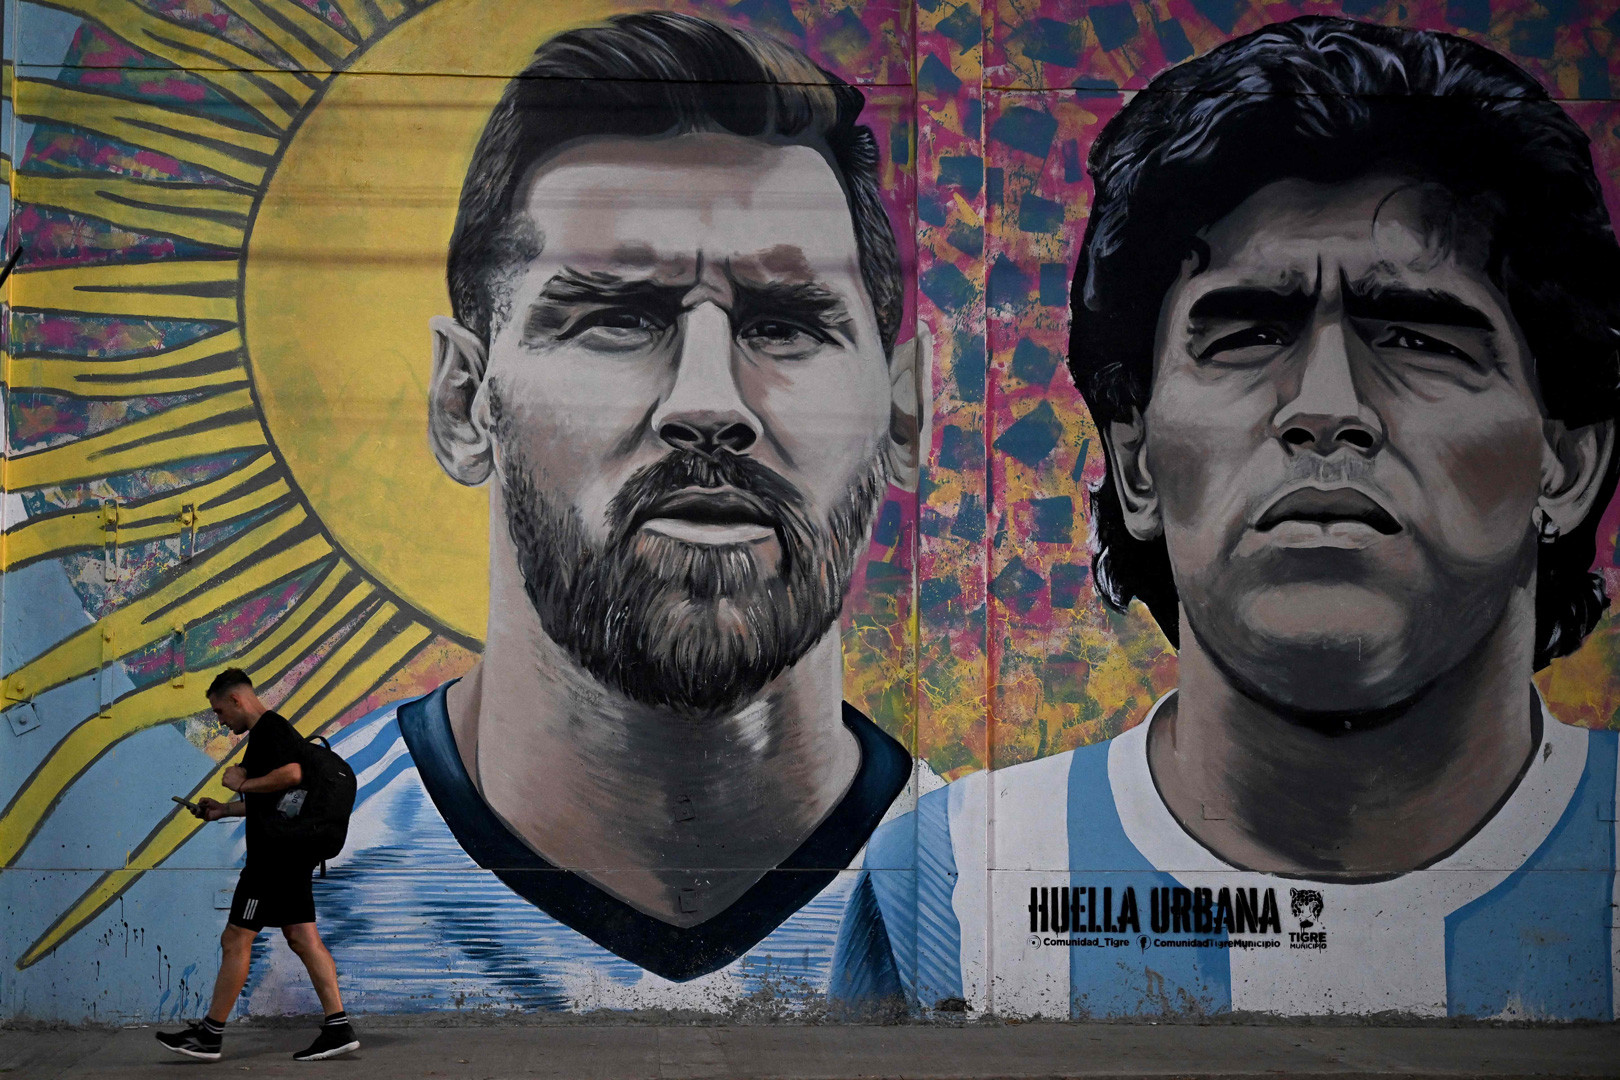 World Cup 2022 sắp tới đây chắc chắn sẽ tràn ngập những cảm xúc khó quên, và Lionel Messi sẽ là một phần không thể thiếu trong những trận đấu xoay quanh vũ trụ bóng đá. Nếu bạn yêu Messi, hãy thức sớm và cổ vũ cho anh ấy trong mỗi trận đấu.